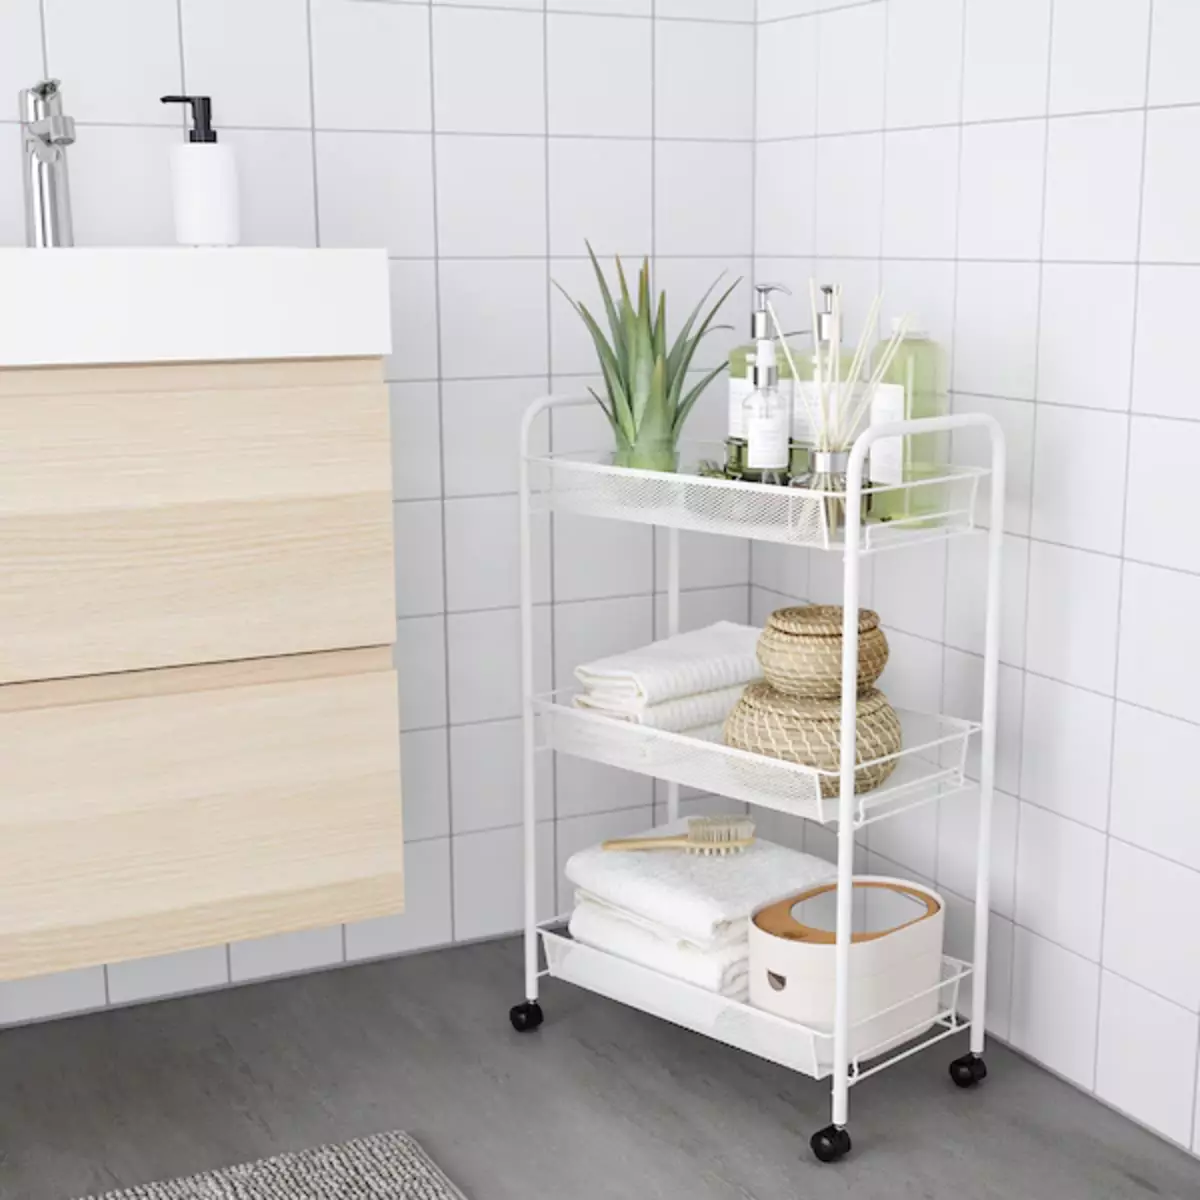 11 ผลิตภัณฑ์ที่มีประโยชน์จาก IKEA สำหรับผู้ที่ต้องการทำห้องน้ำเพื่อผ่อนคลาย 7050_83